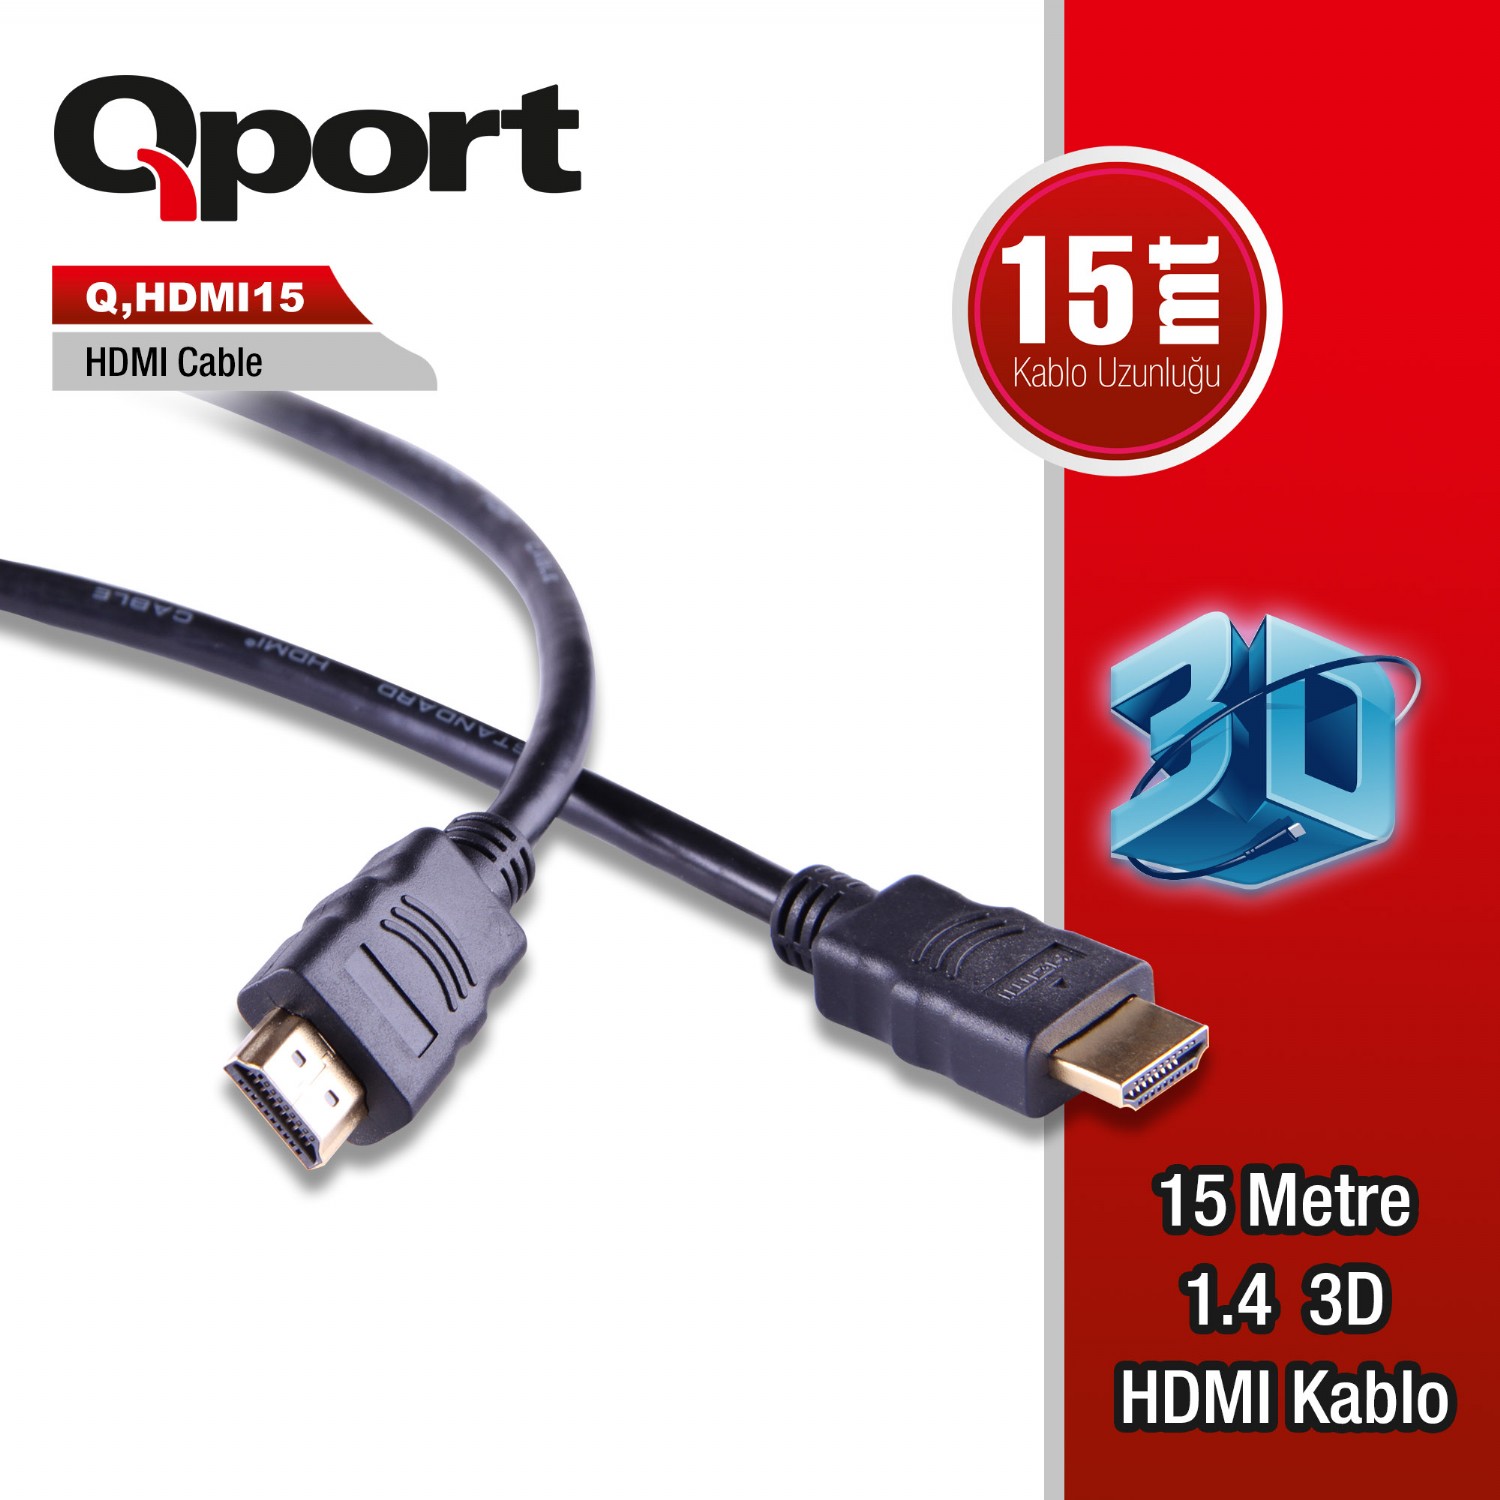 Q-HDMI15